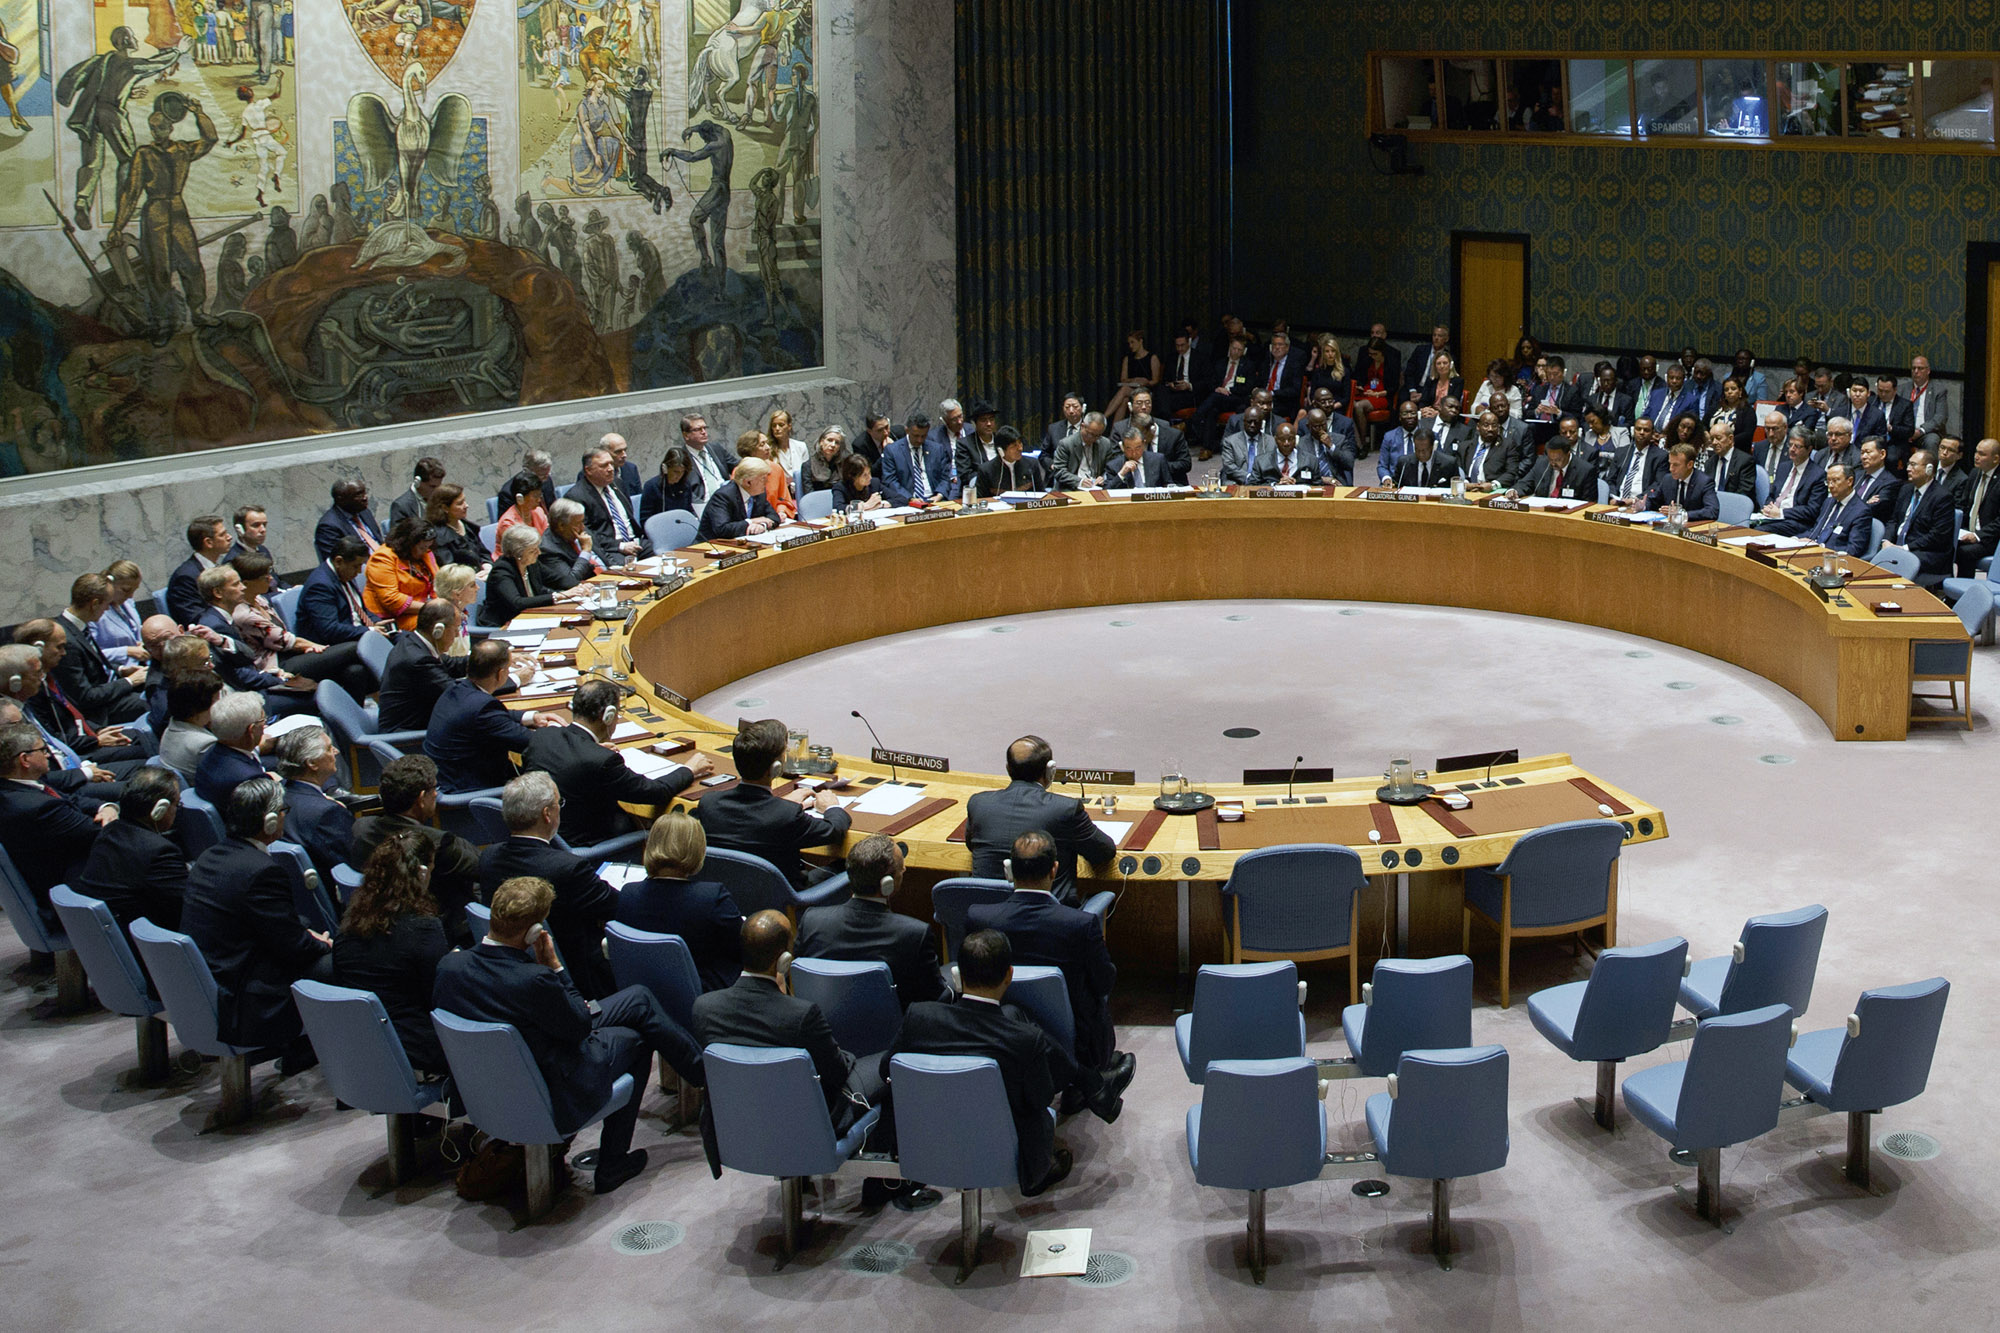 Trump preside Consejo de Seguridad ONU y RD estaba ahí